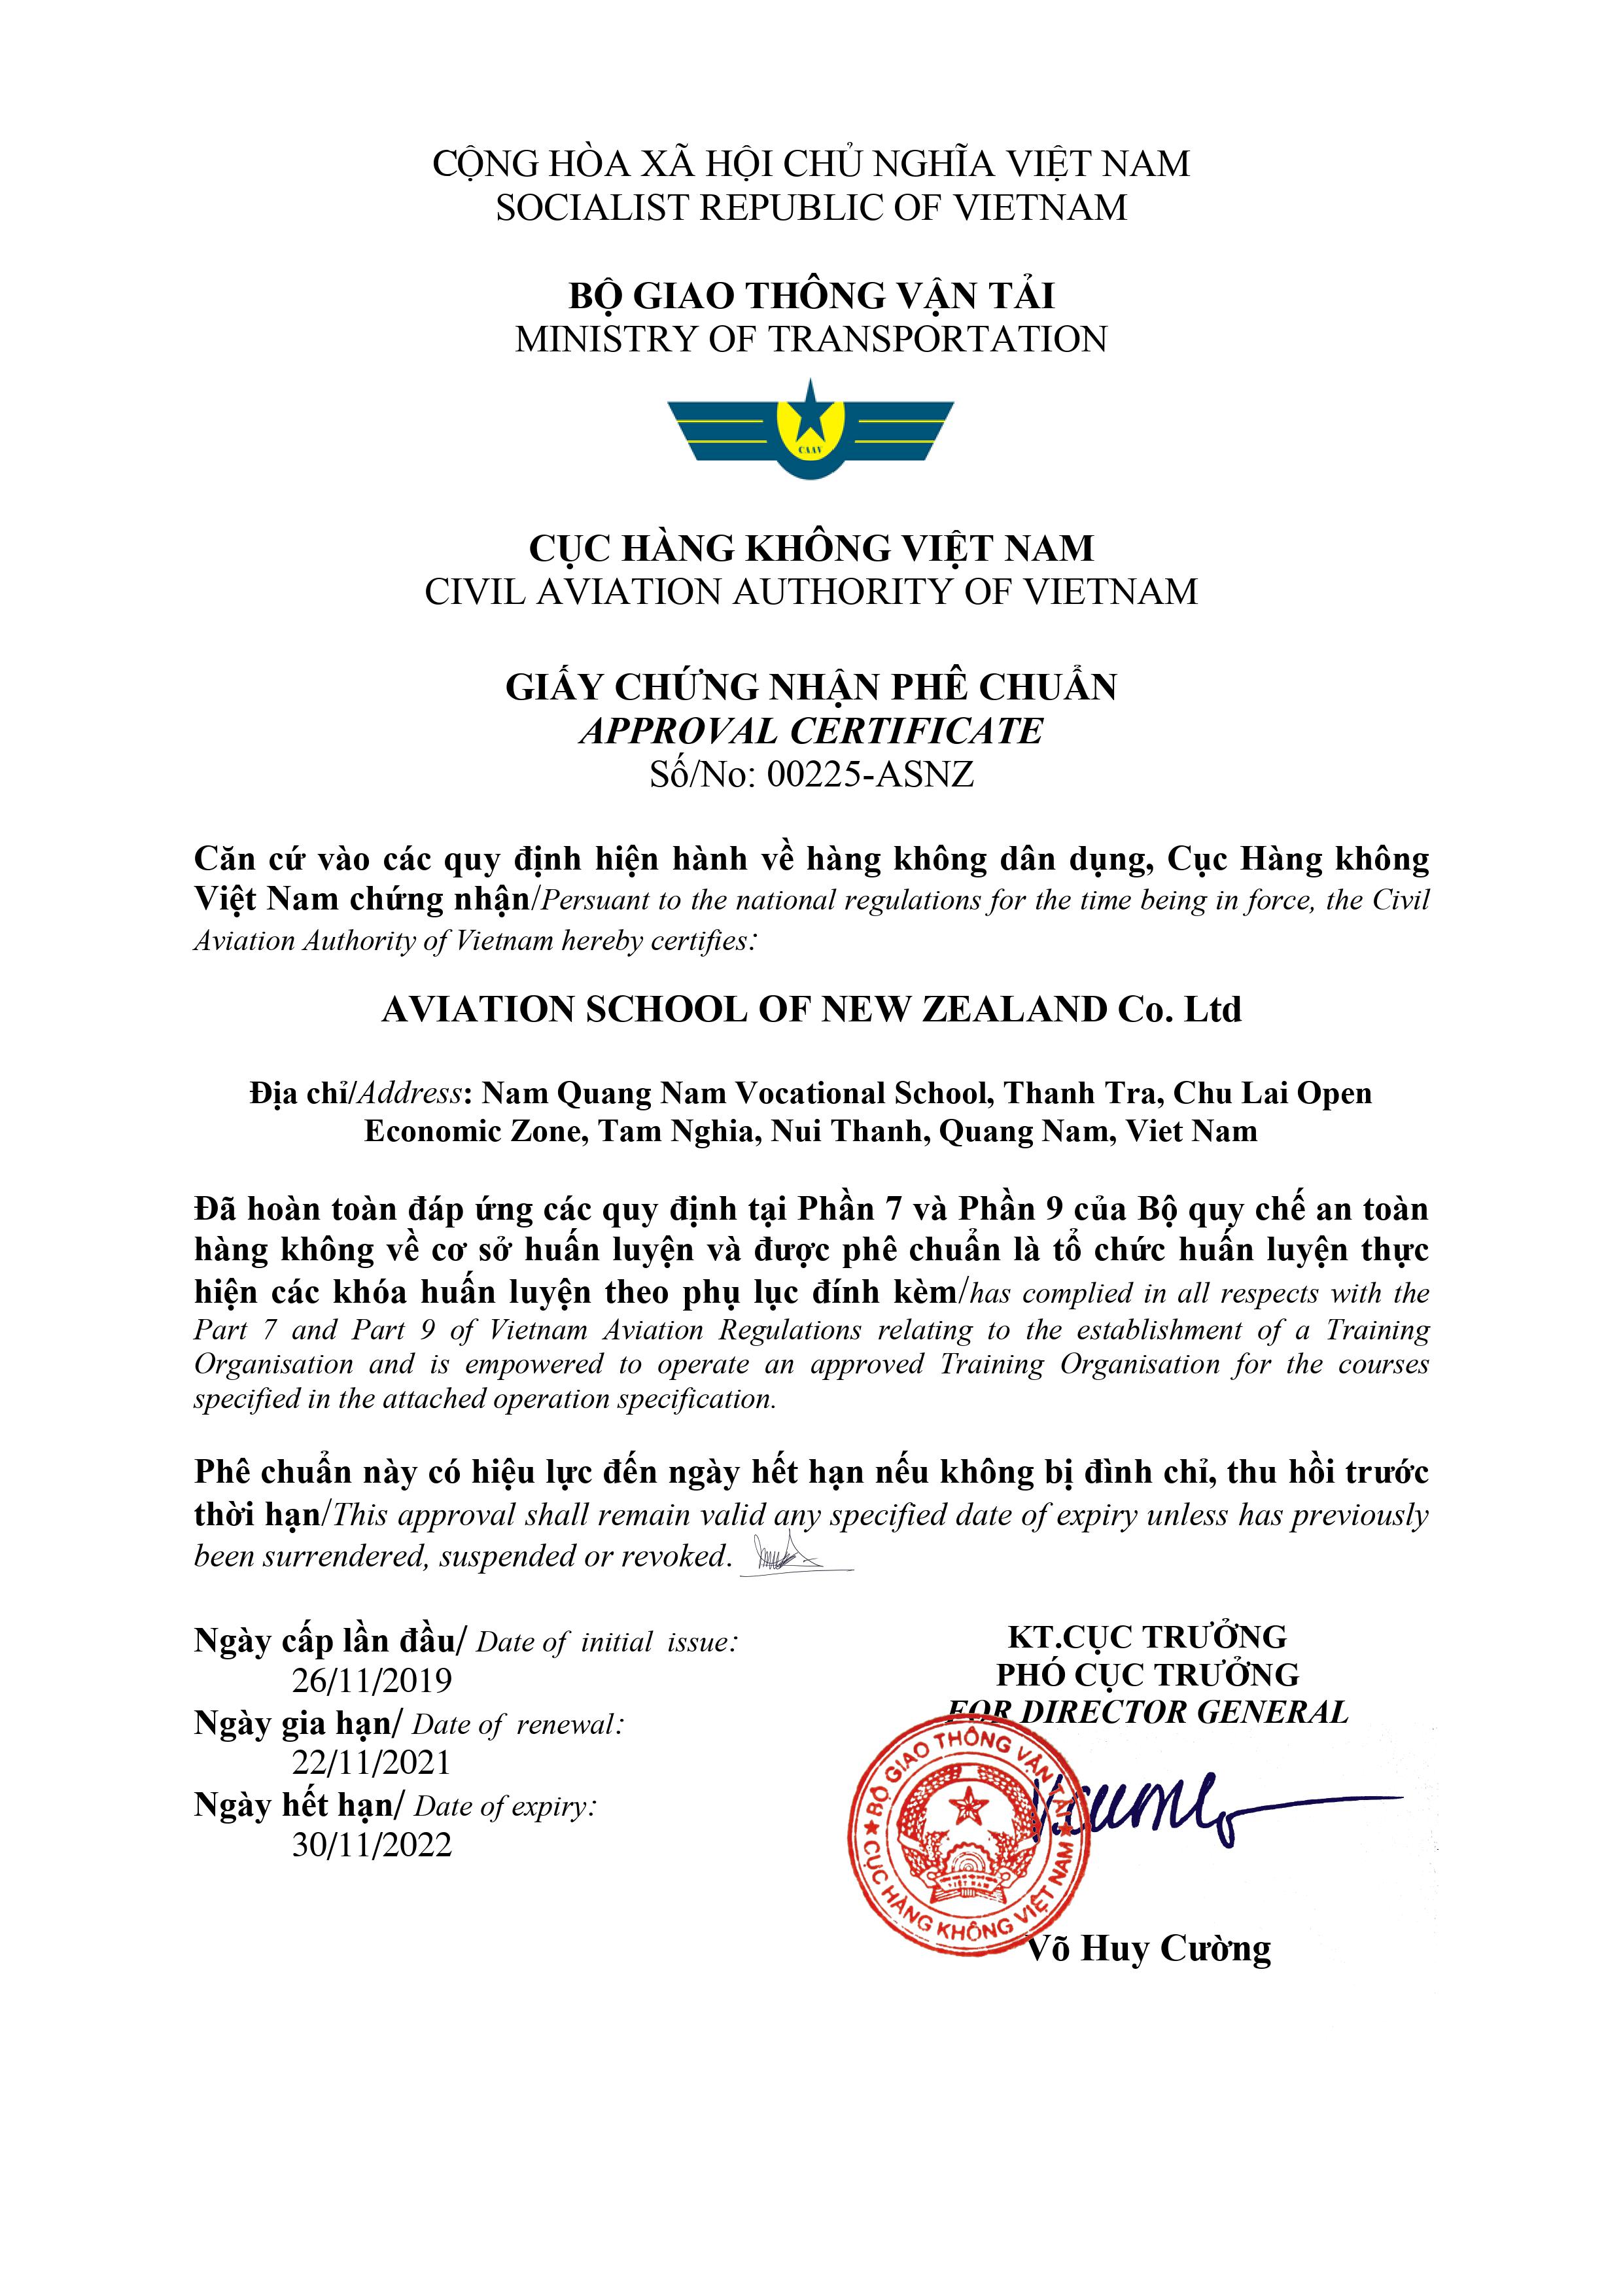 EFT - Giấy Chứng Nhận Phê Chuẩn Tổ Chức Đào Tạo Của Cục Hàng Không Việt Nam